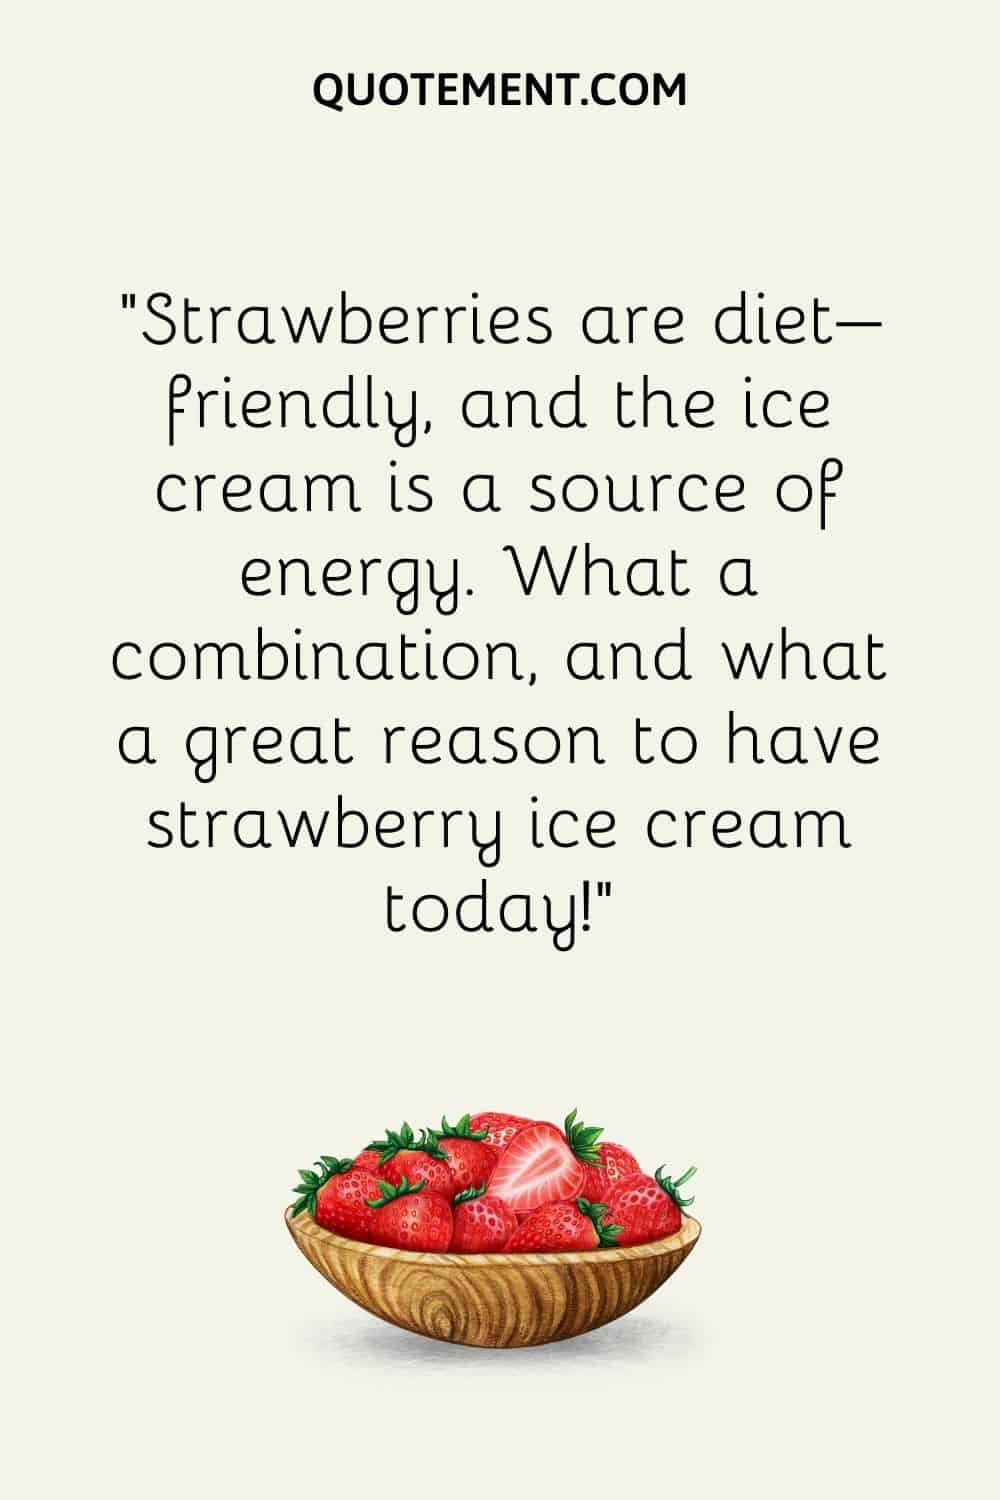 Las fresas son aptas para dietas, y el helado es una fuente de energía